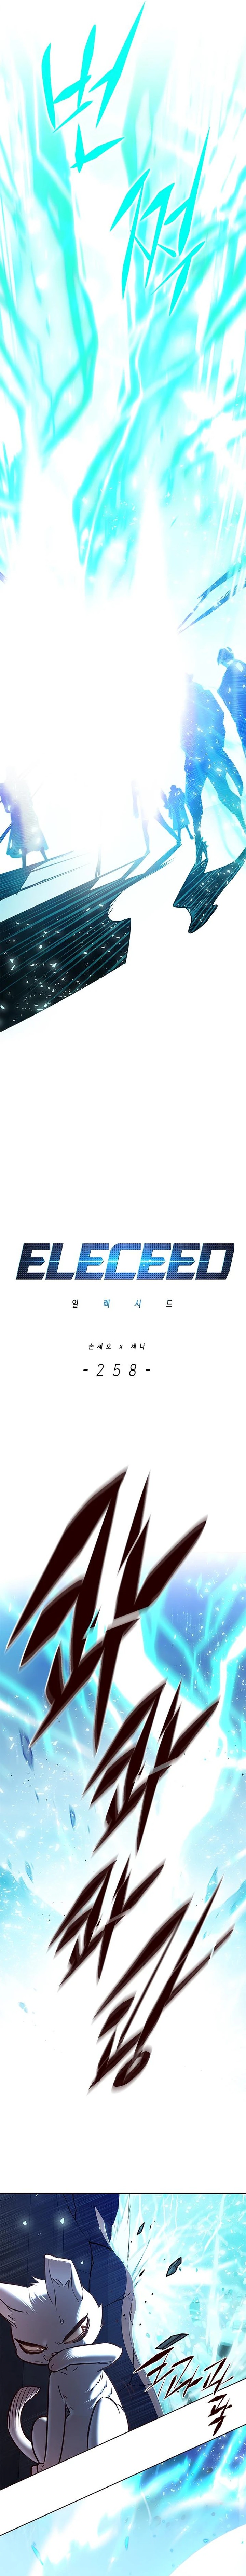 Eleceed 258 2